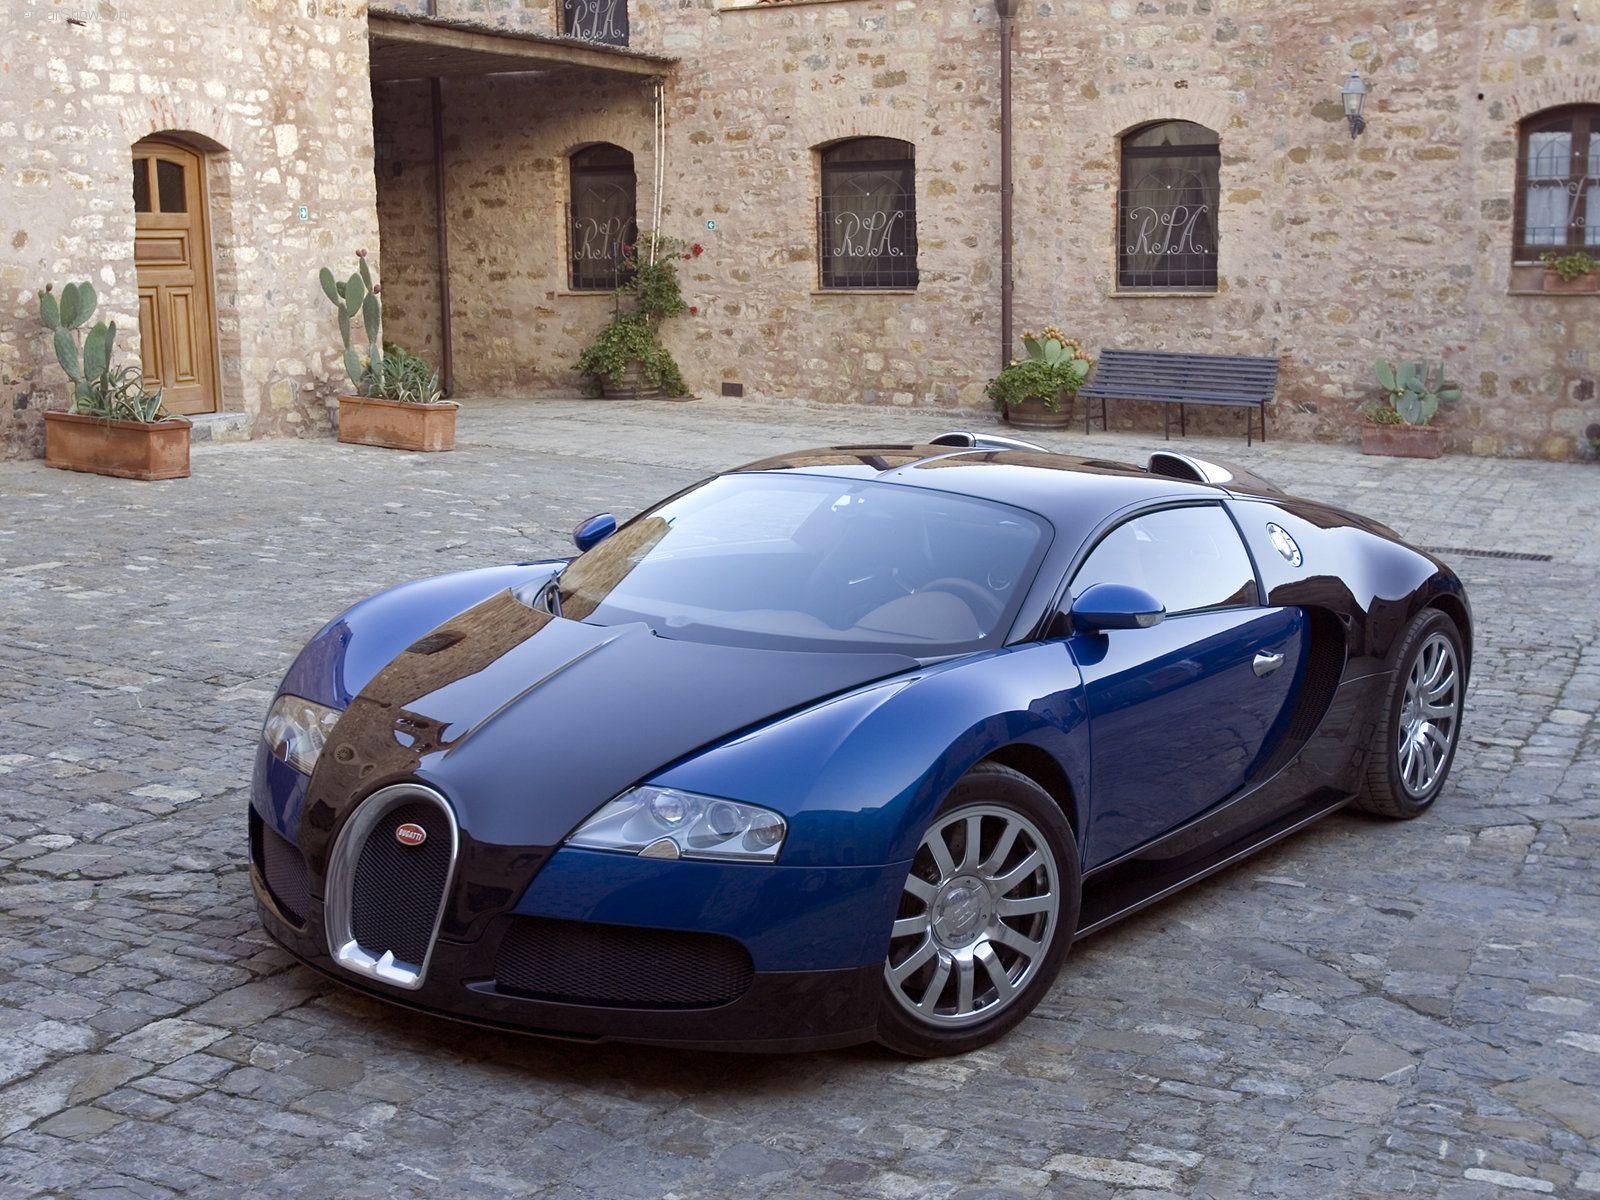 Bugatti EB 16.4 Veyron picture # 32569. Bugatti photo gallery